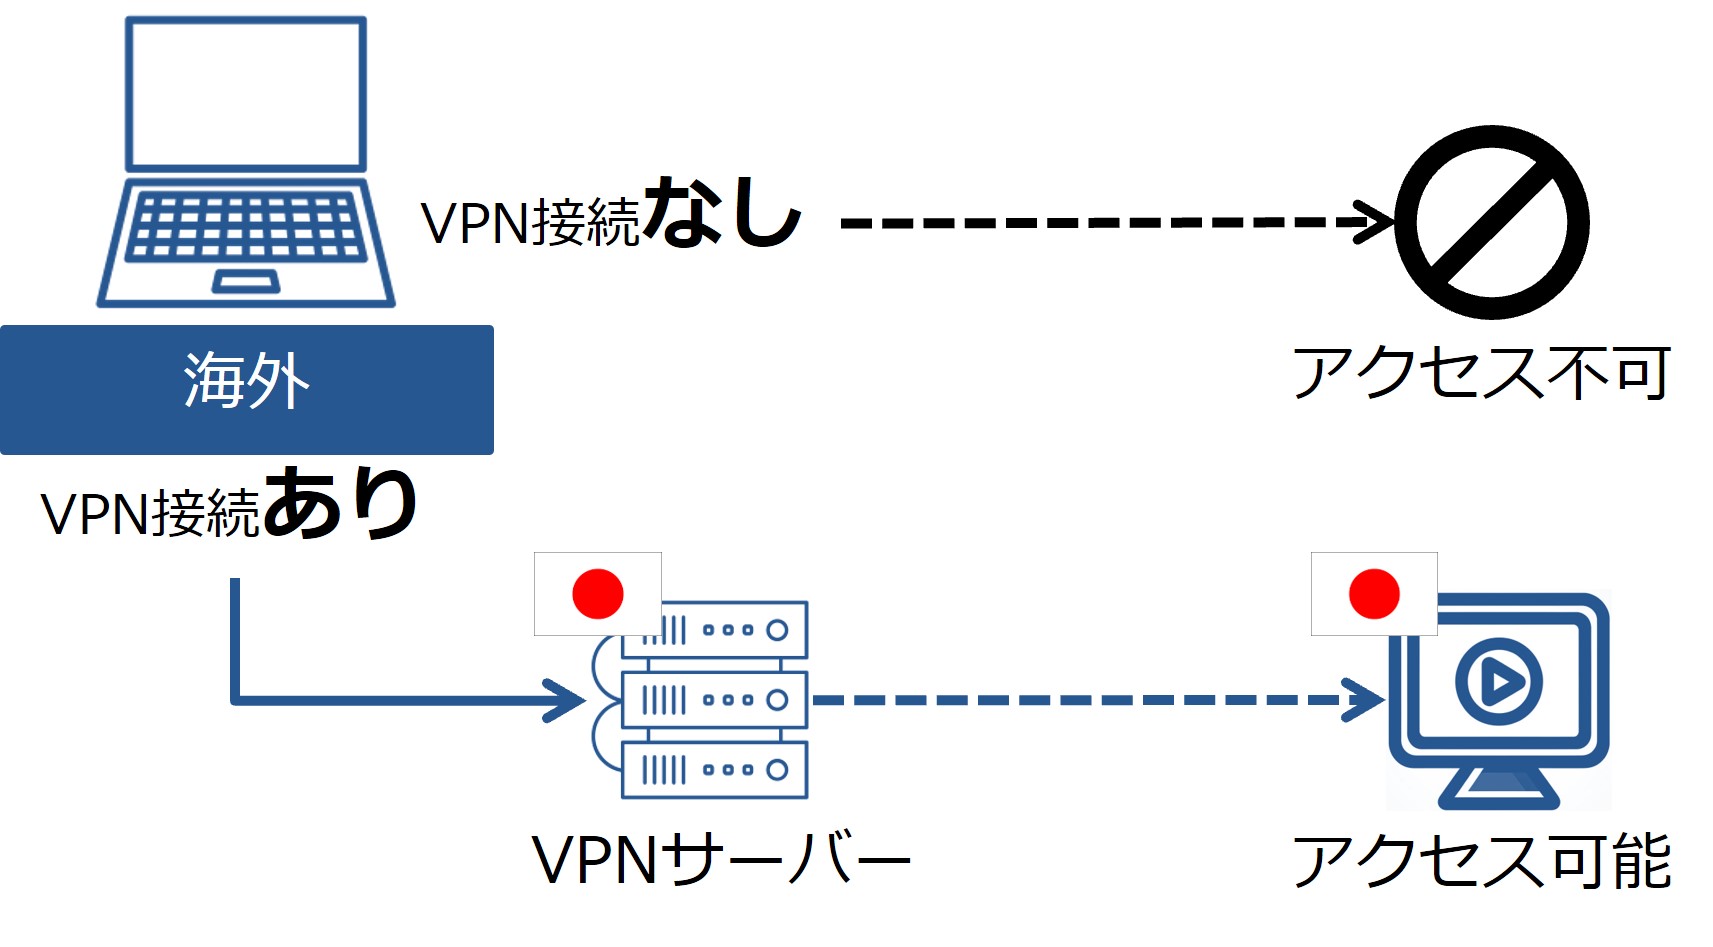 日本のVPNサーバーに接続した場合